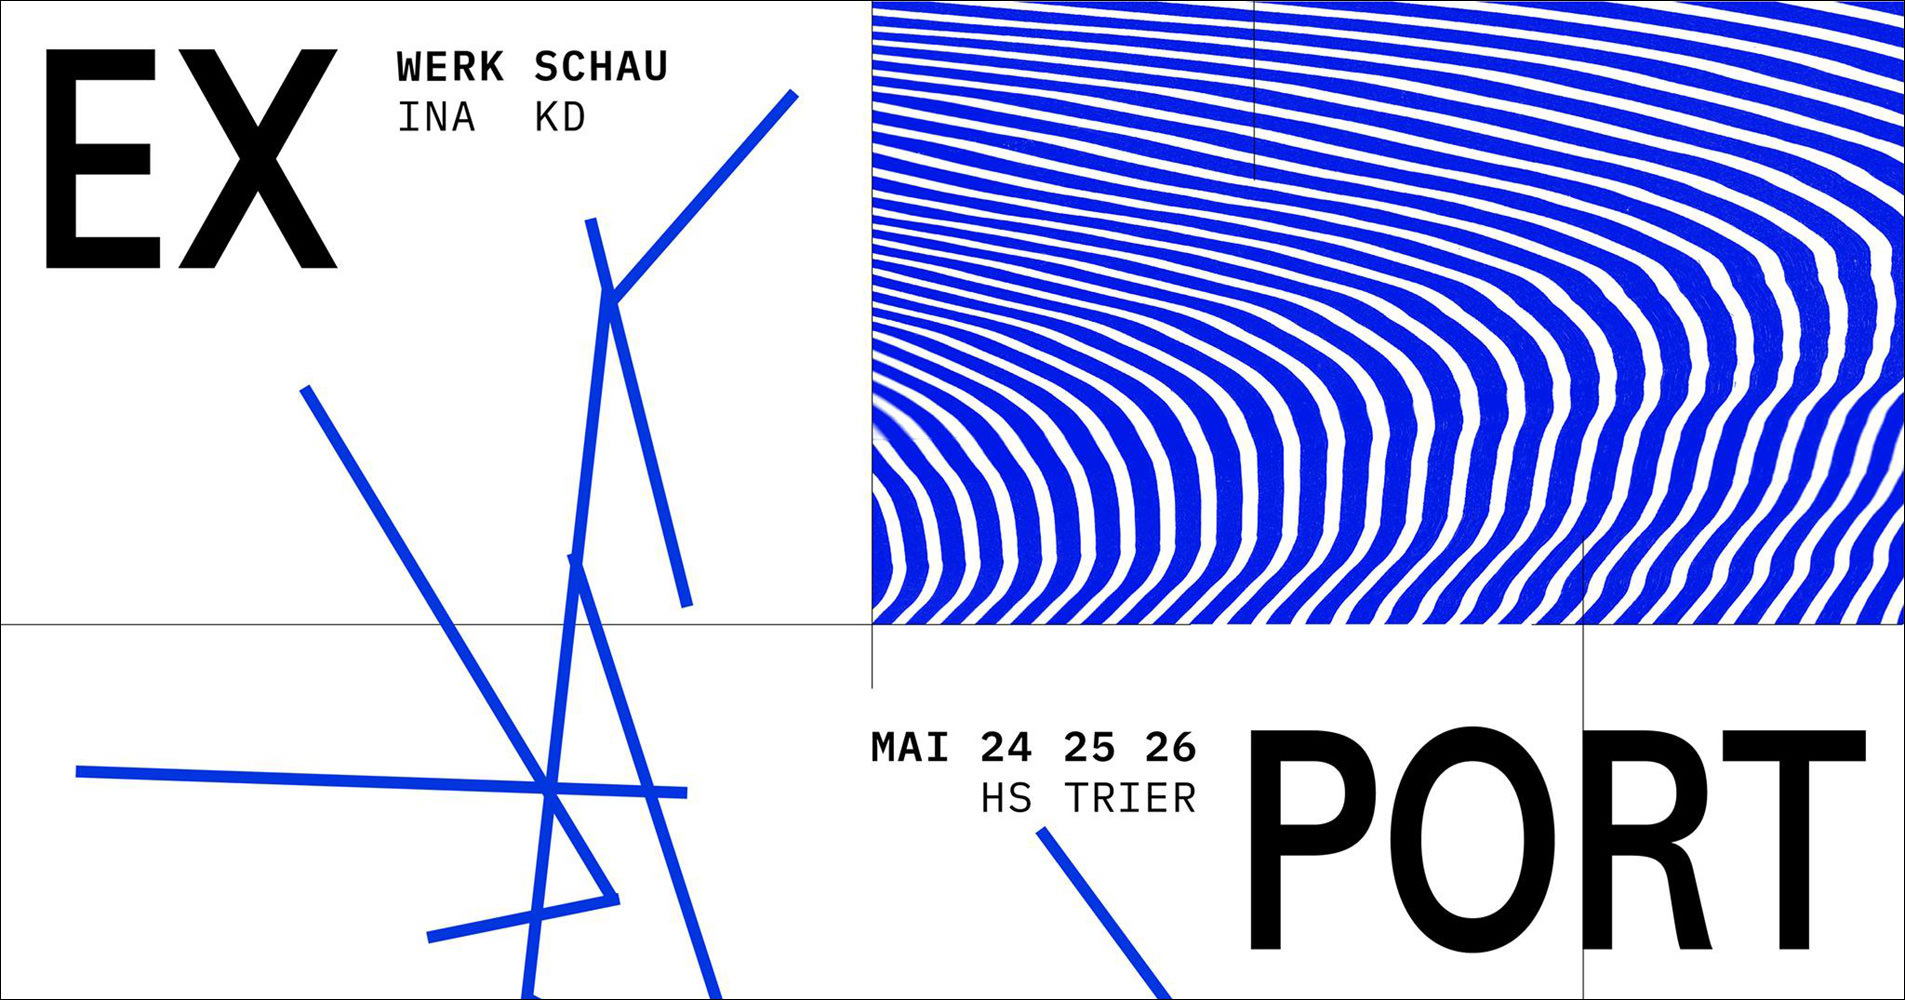 Werkschau, 2019, Kommunikationsdesign, Hochschule Trier, Plakat